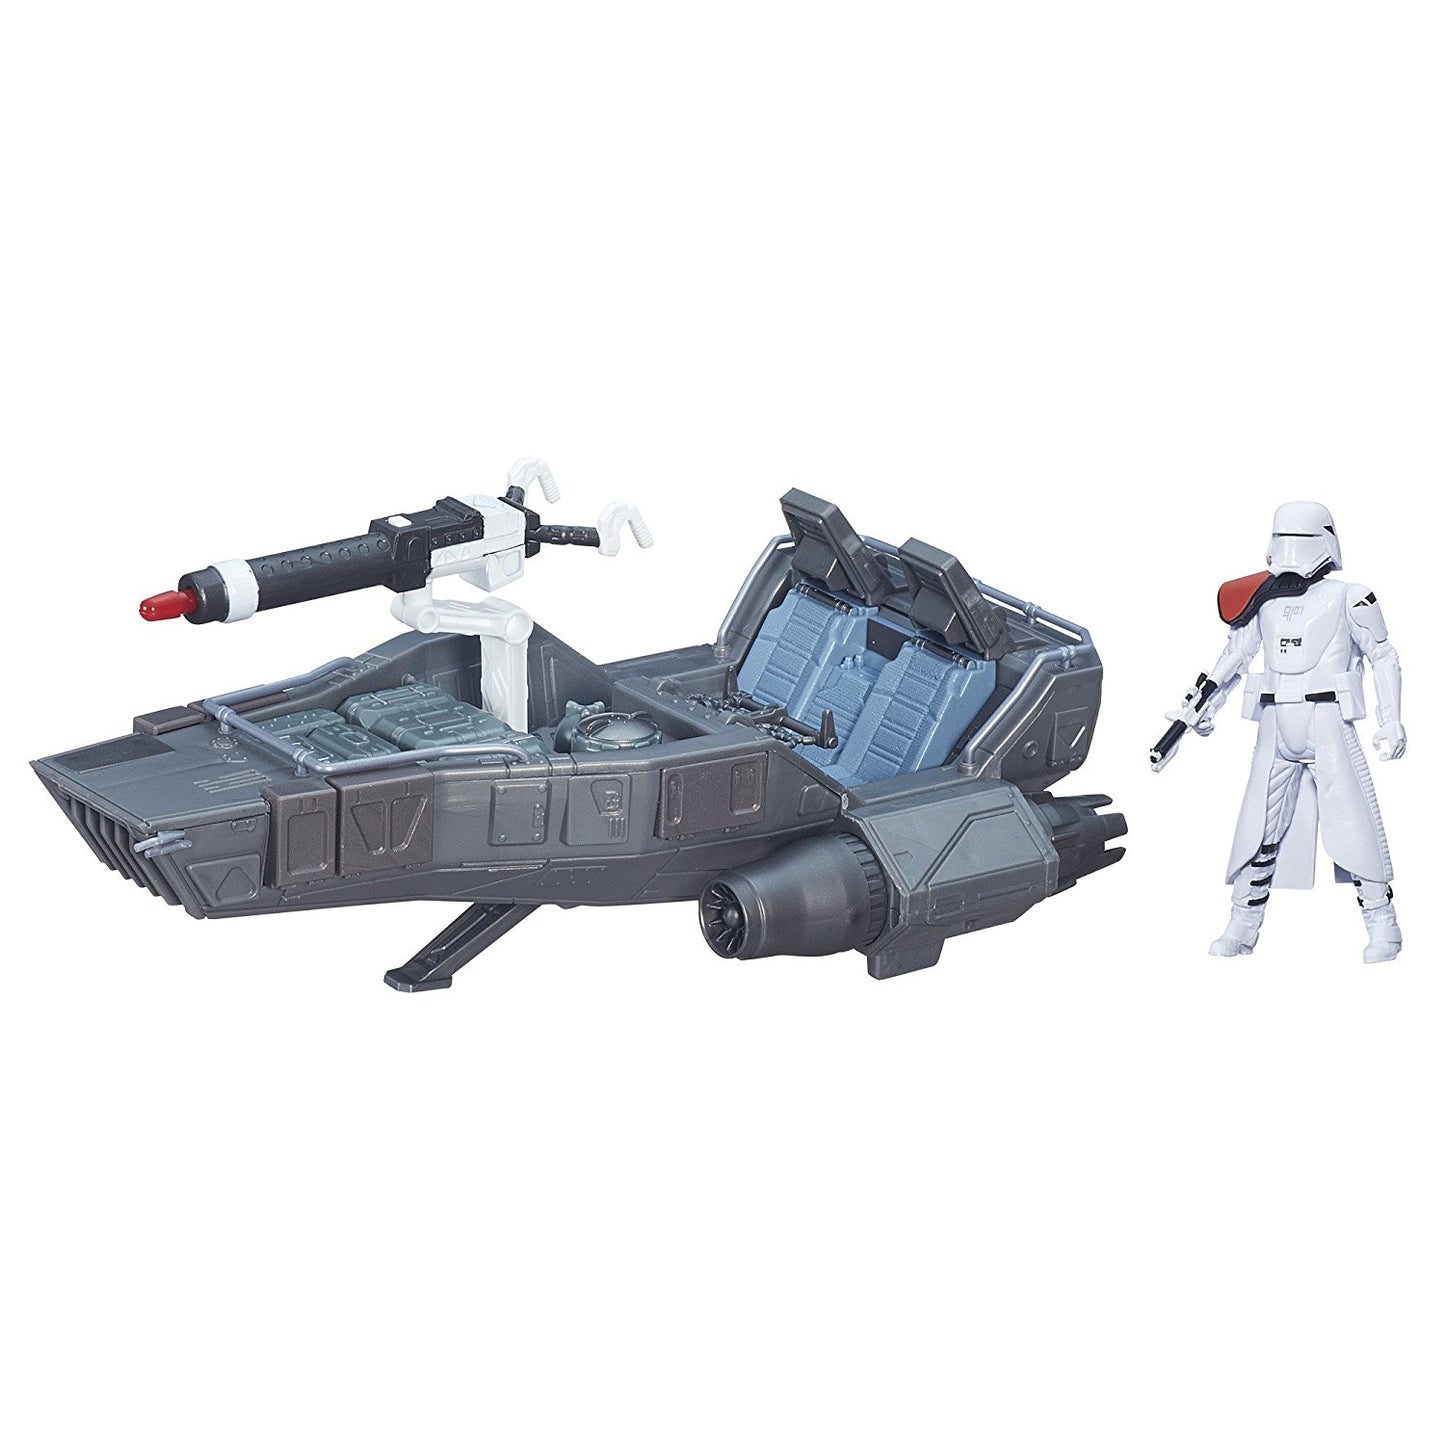 Star Wars: The Force Awakens First Order Snowspeeder Vehicle